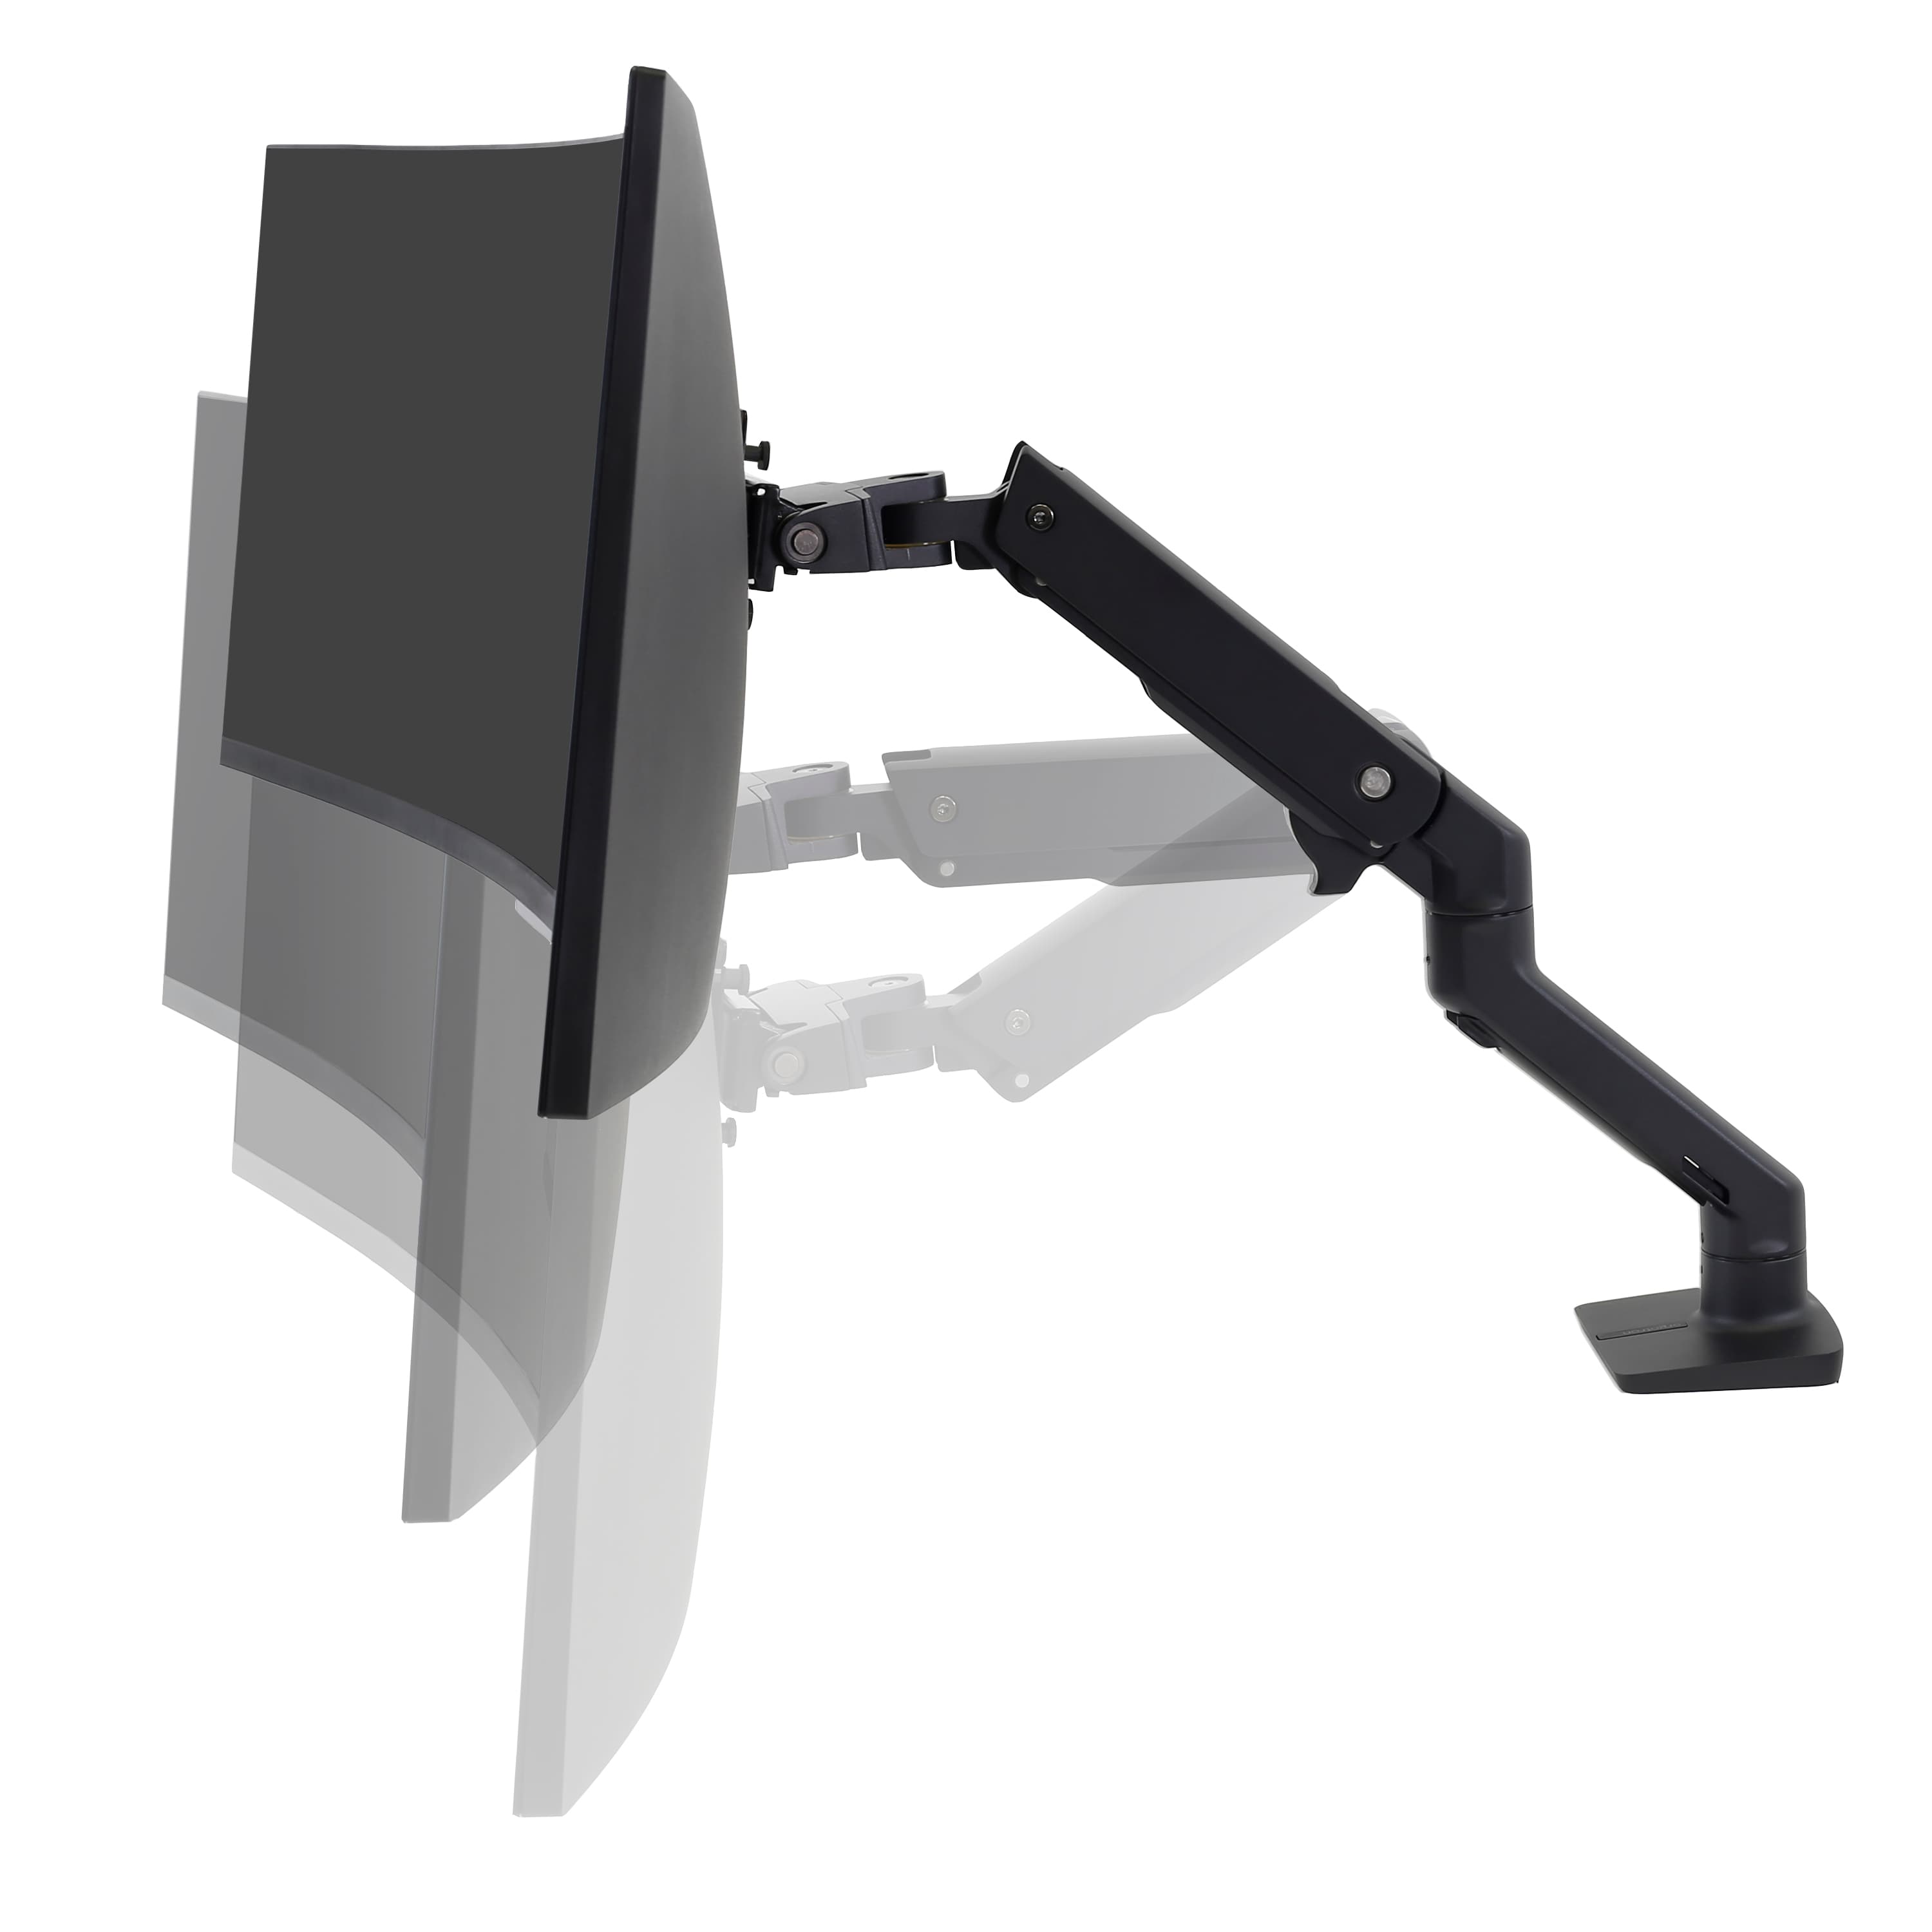 Ergotron HX Series 45-475-216 soporte para monitor 124,5 cm (49) Blanco  Escritorio, Soporte de monitor blanco, Abrazadera, 19 kg, 124,5 cm (49),  400 x 400 mm, Ajustes de altura, Blanco